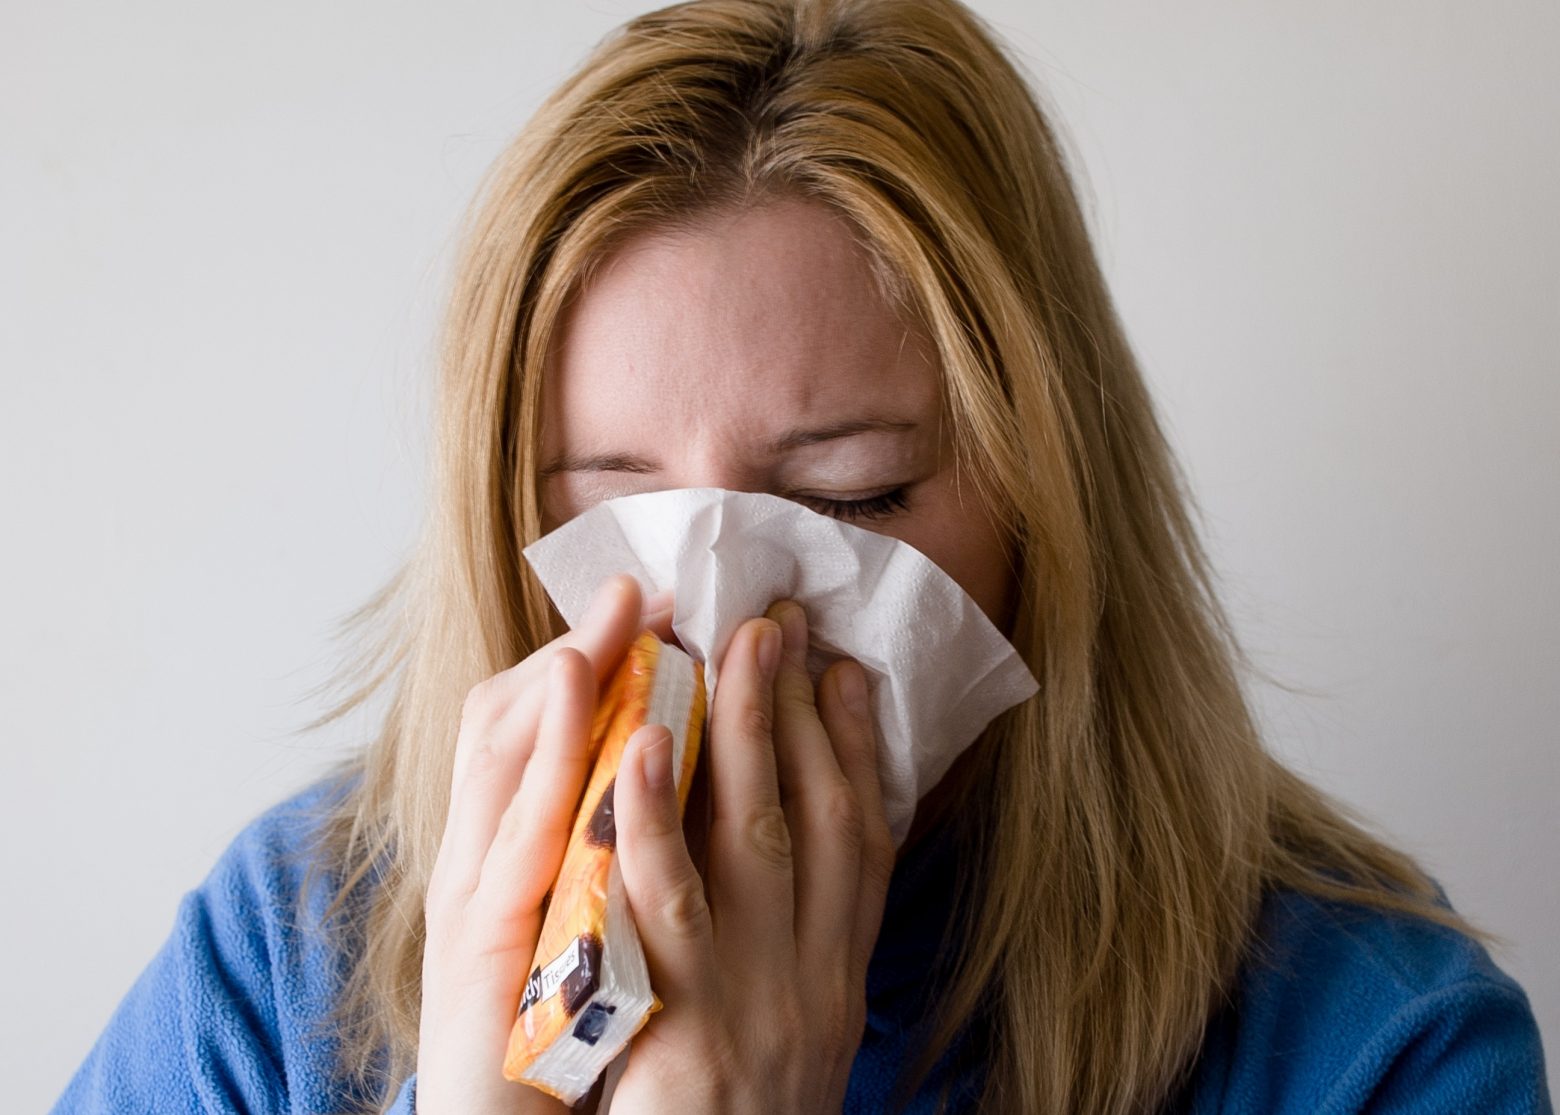 Κοροναϊός: Η πιθανότητα θανάτου «μικρότερη από ό,τι στη γρίπη», εκτιμούν οι FT